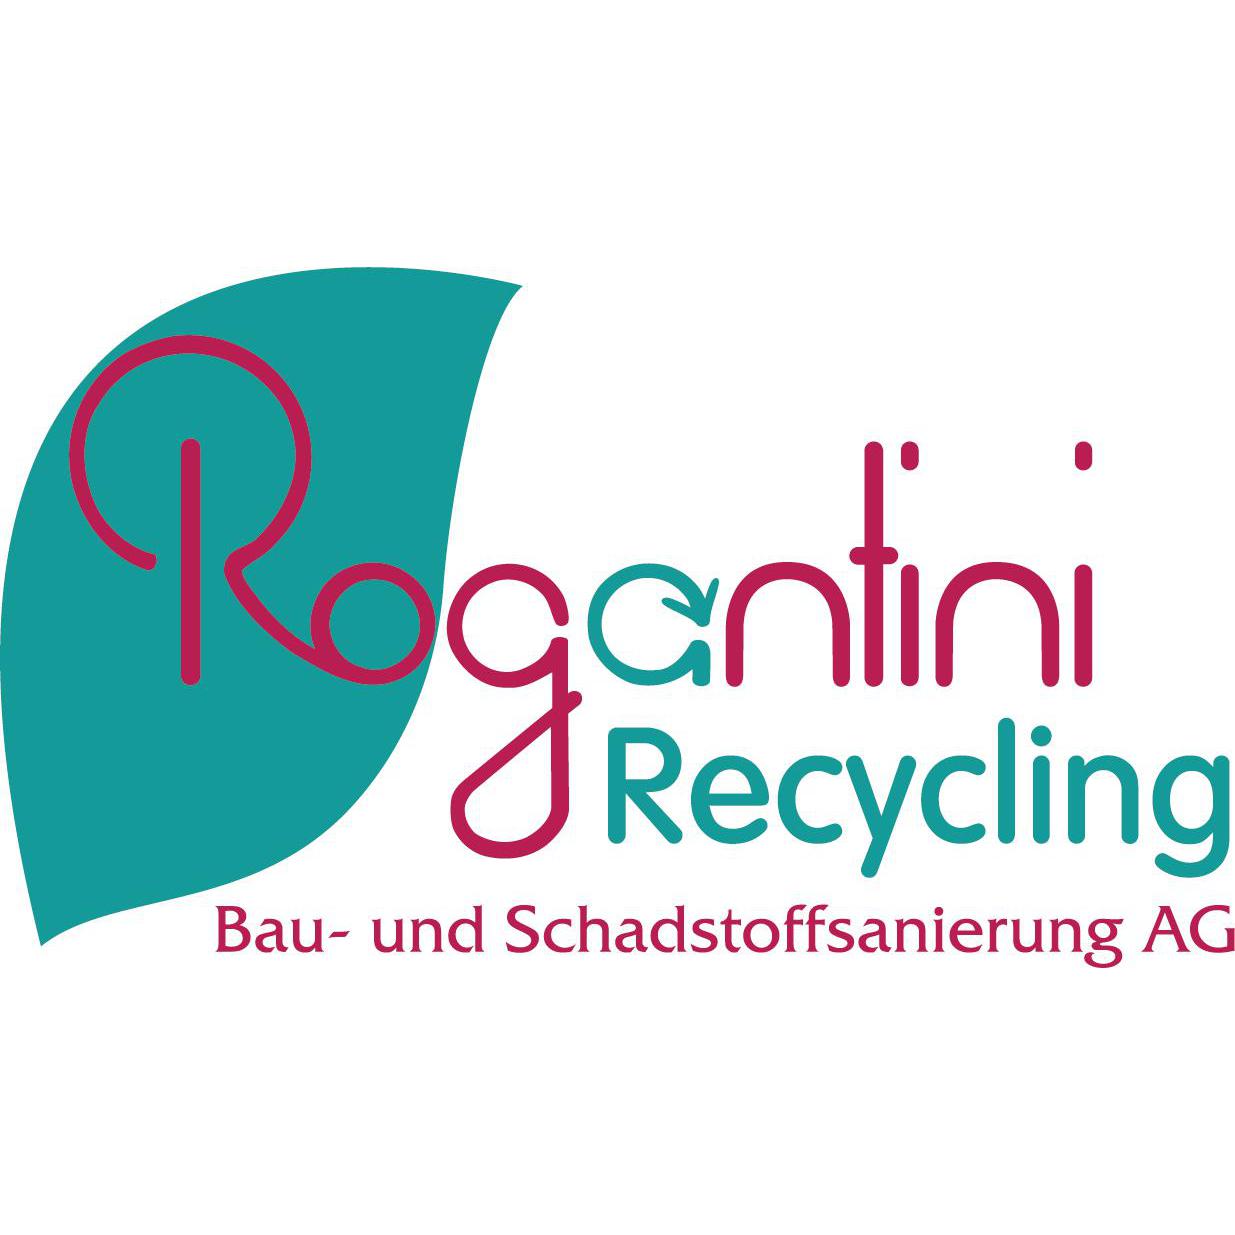 Rogantini Receycling, Bau- & Schadstoffsanierung AG Logo